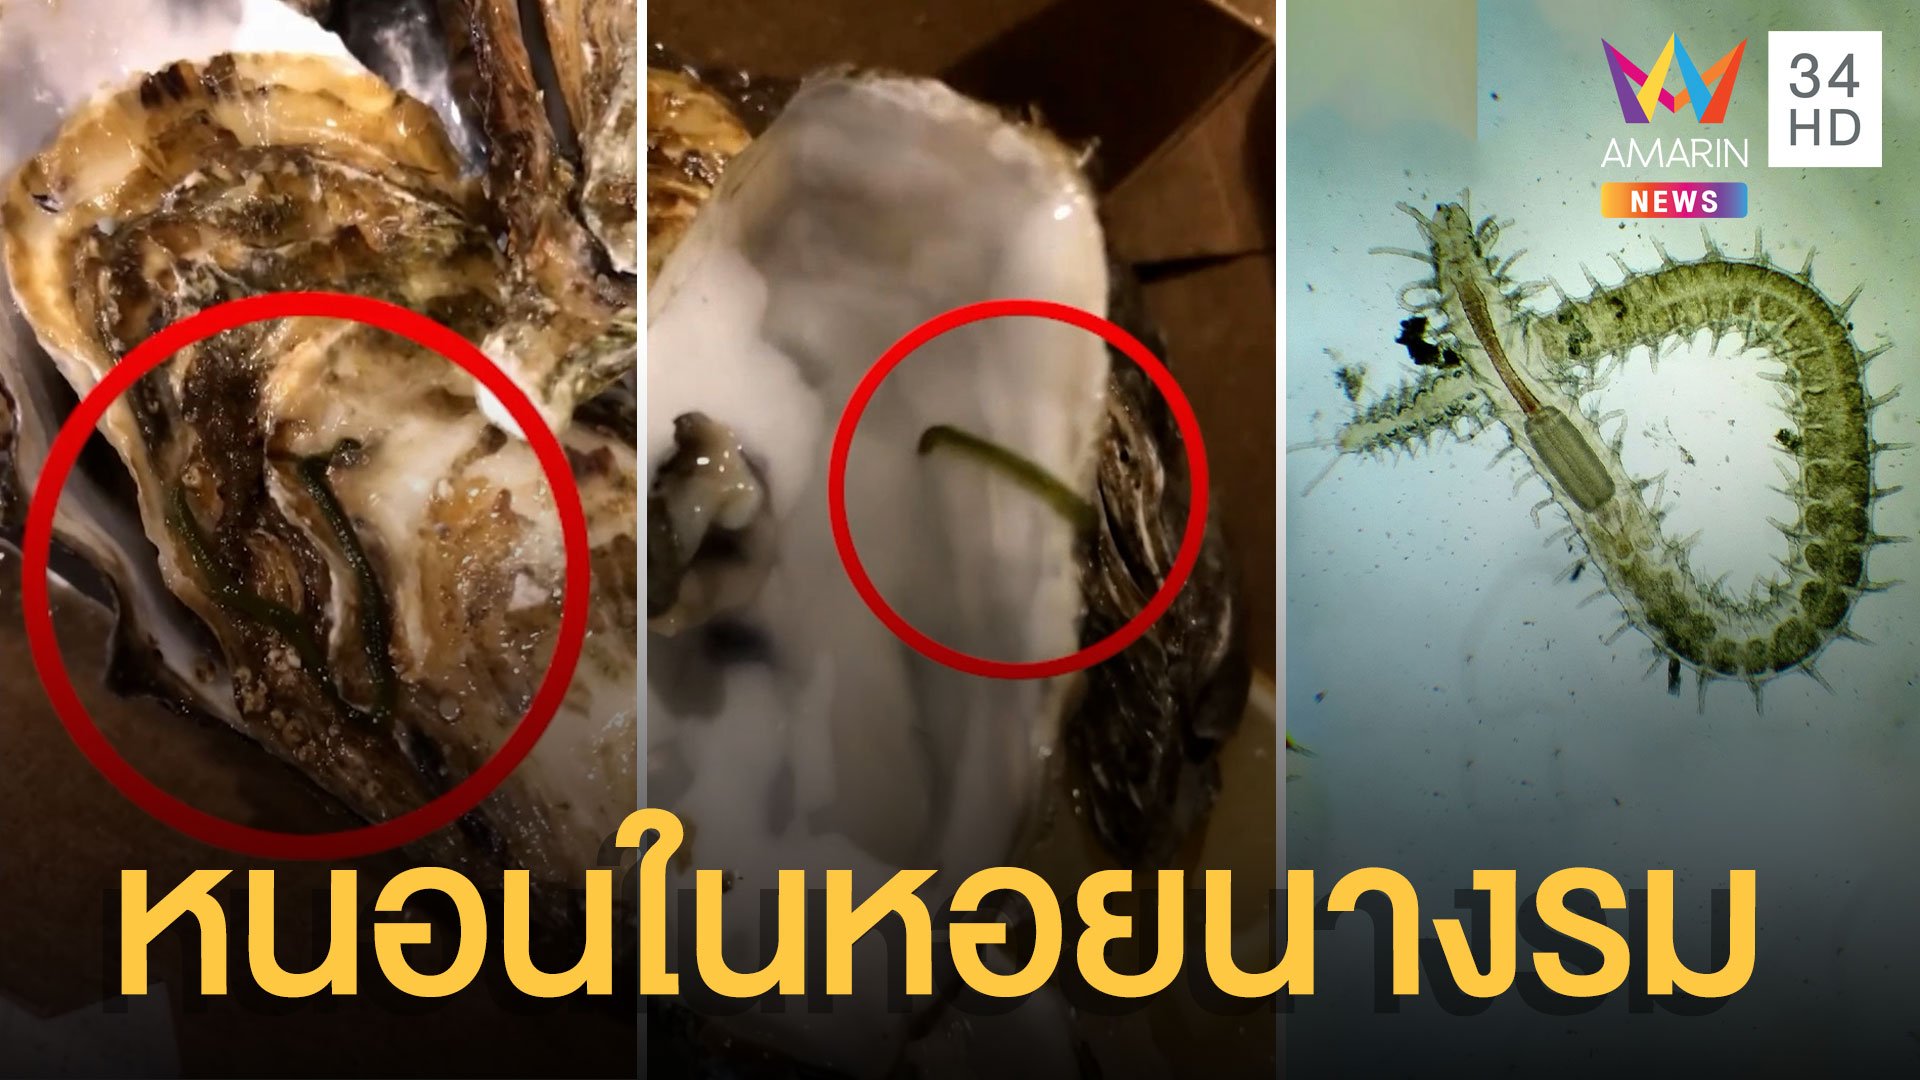 สาวผงะ! เจอหนอนประหลาดในหอยนางรมสด สยองไม่กล้ากิน | ข่าวอรุณอมรินทร์ | 15 ก.พ. 65 | AMARIN TVHD34